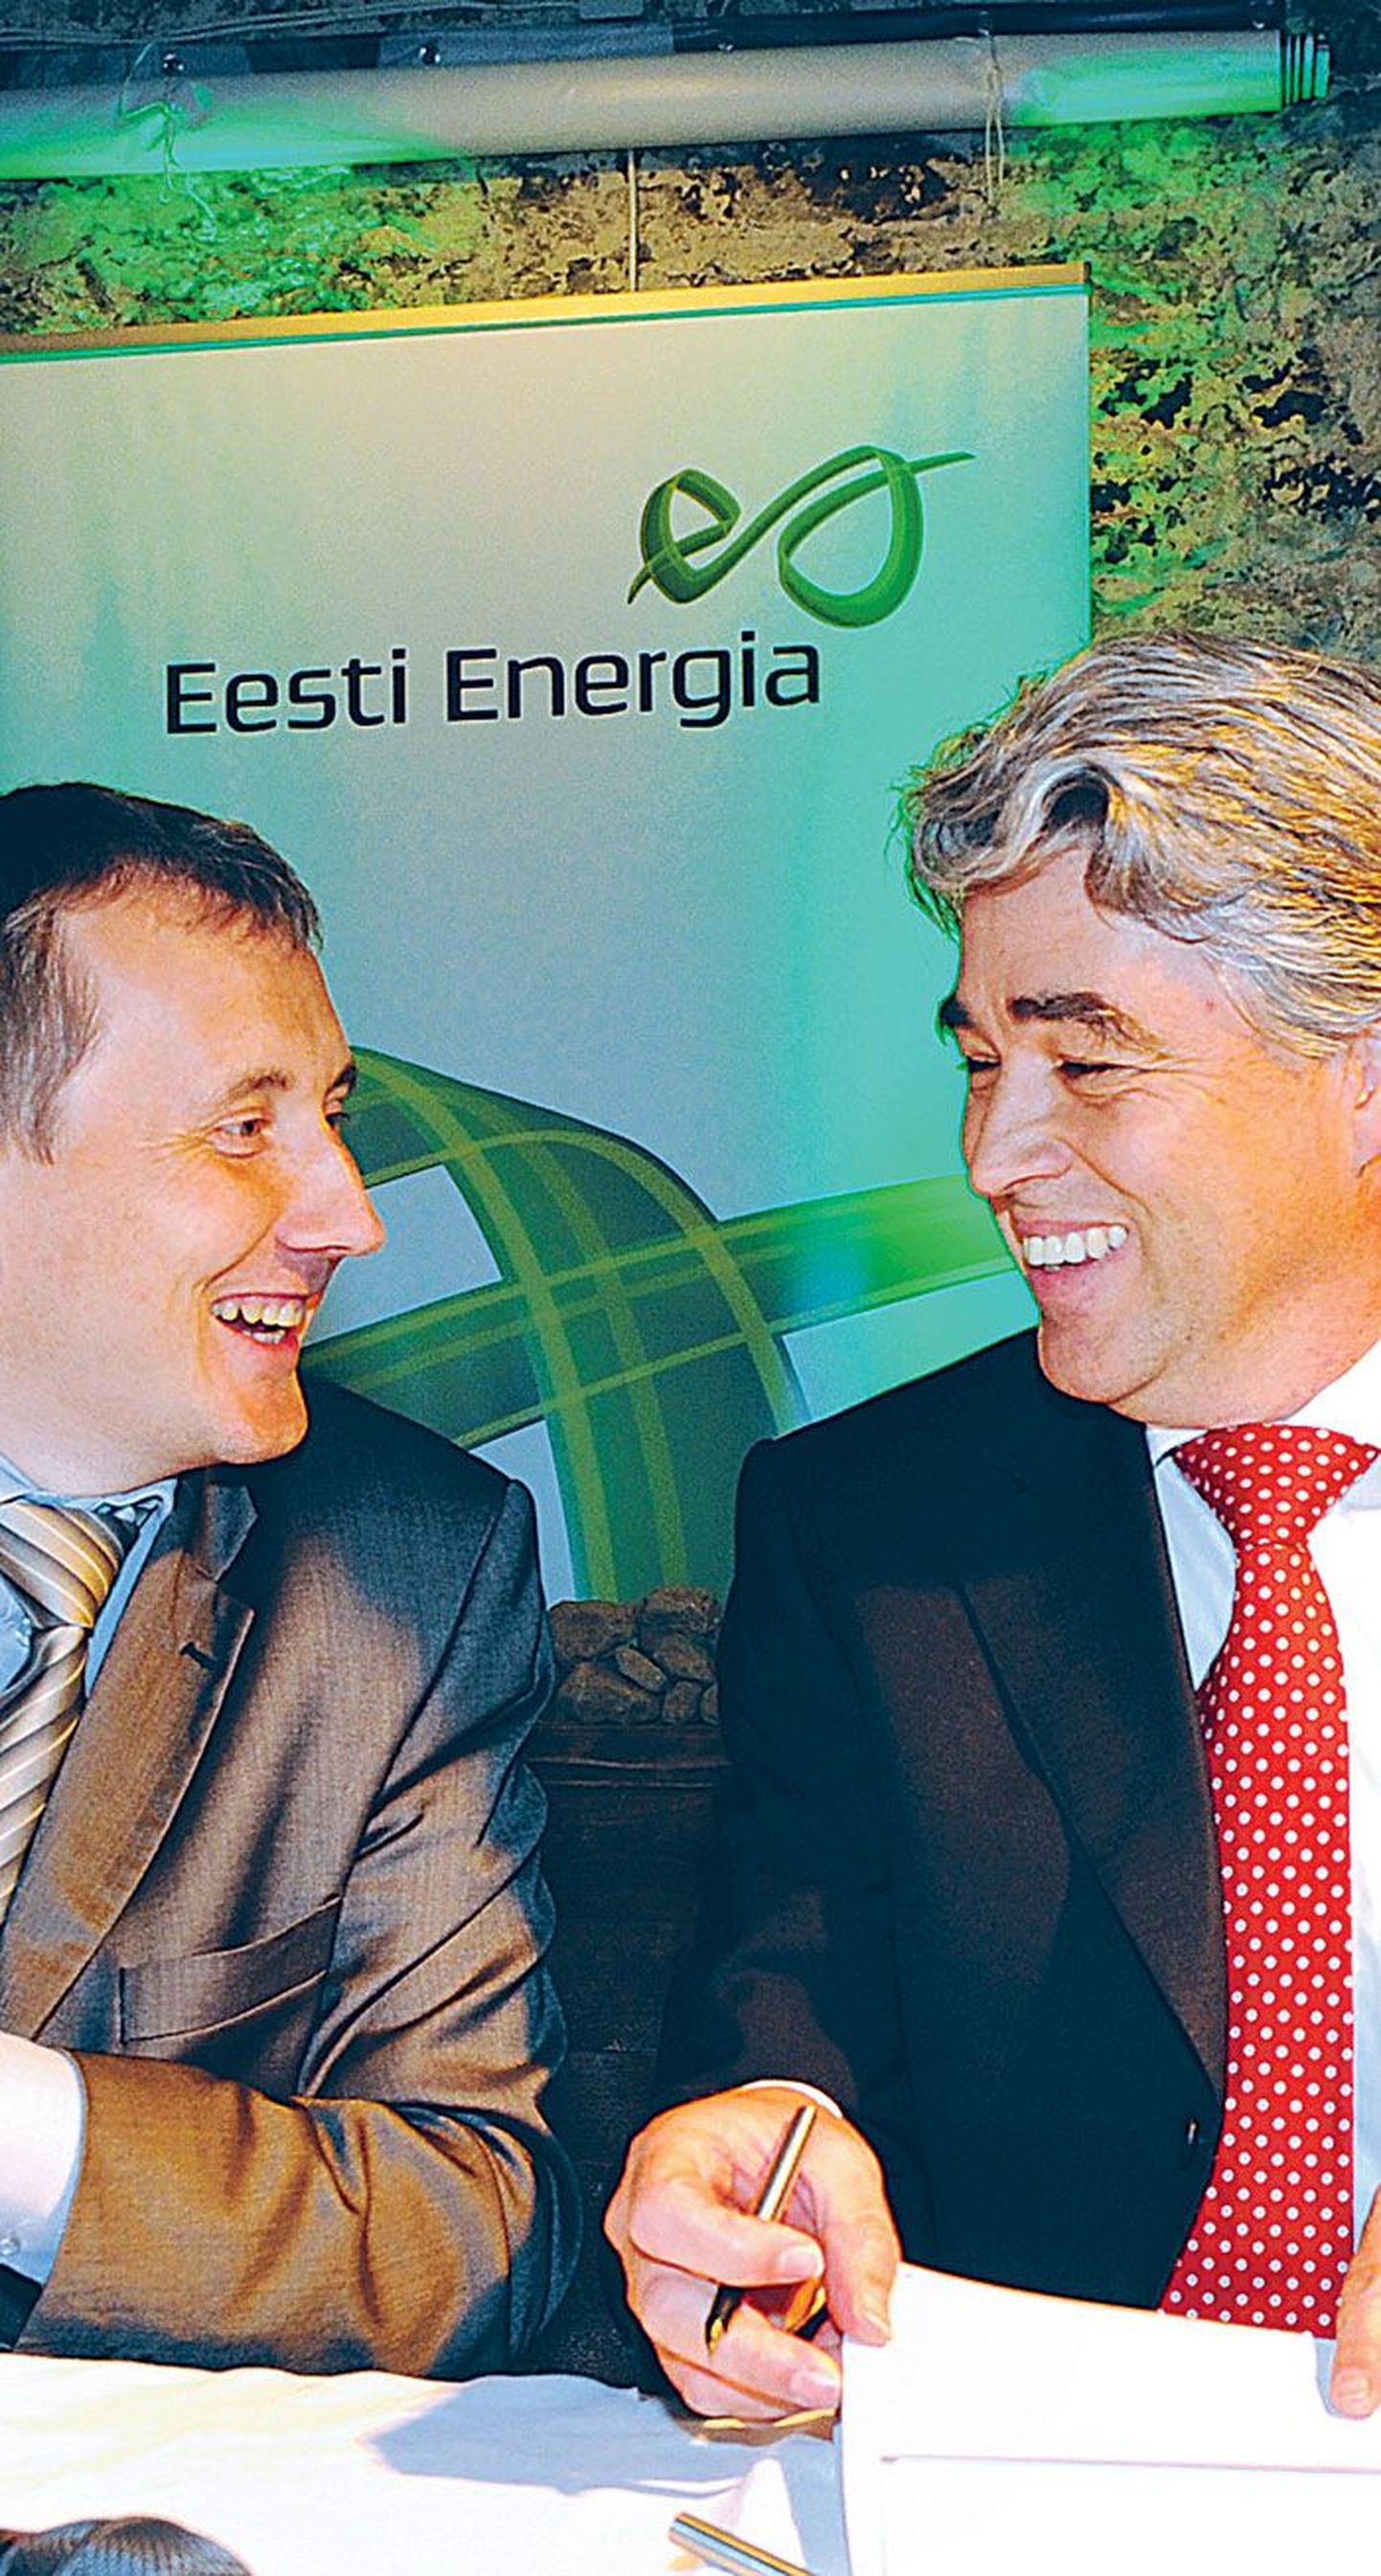 Eesti Energia juht Sandor Liive (vasakul) ja insenerifirma Outotec asepresident Peter Weber kirjutasid alla põlevkivist transpordikütuseid tootma hakkava ühisettevõtte lepingule.